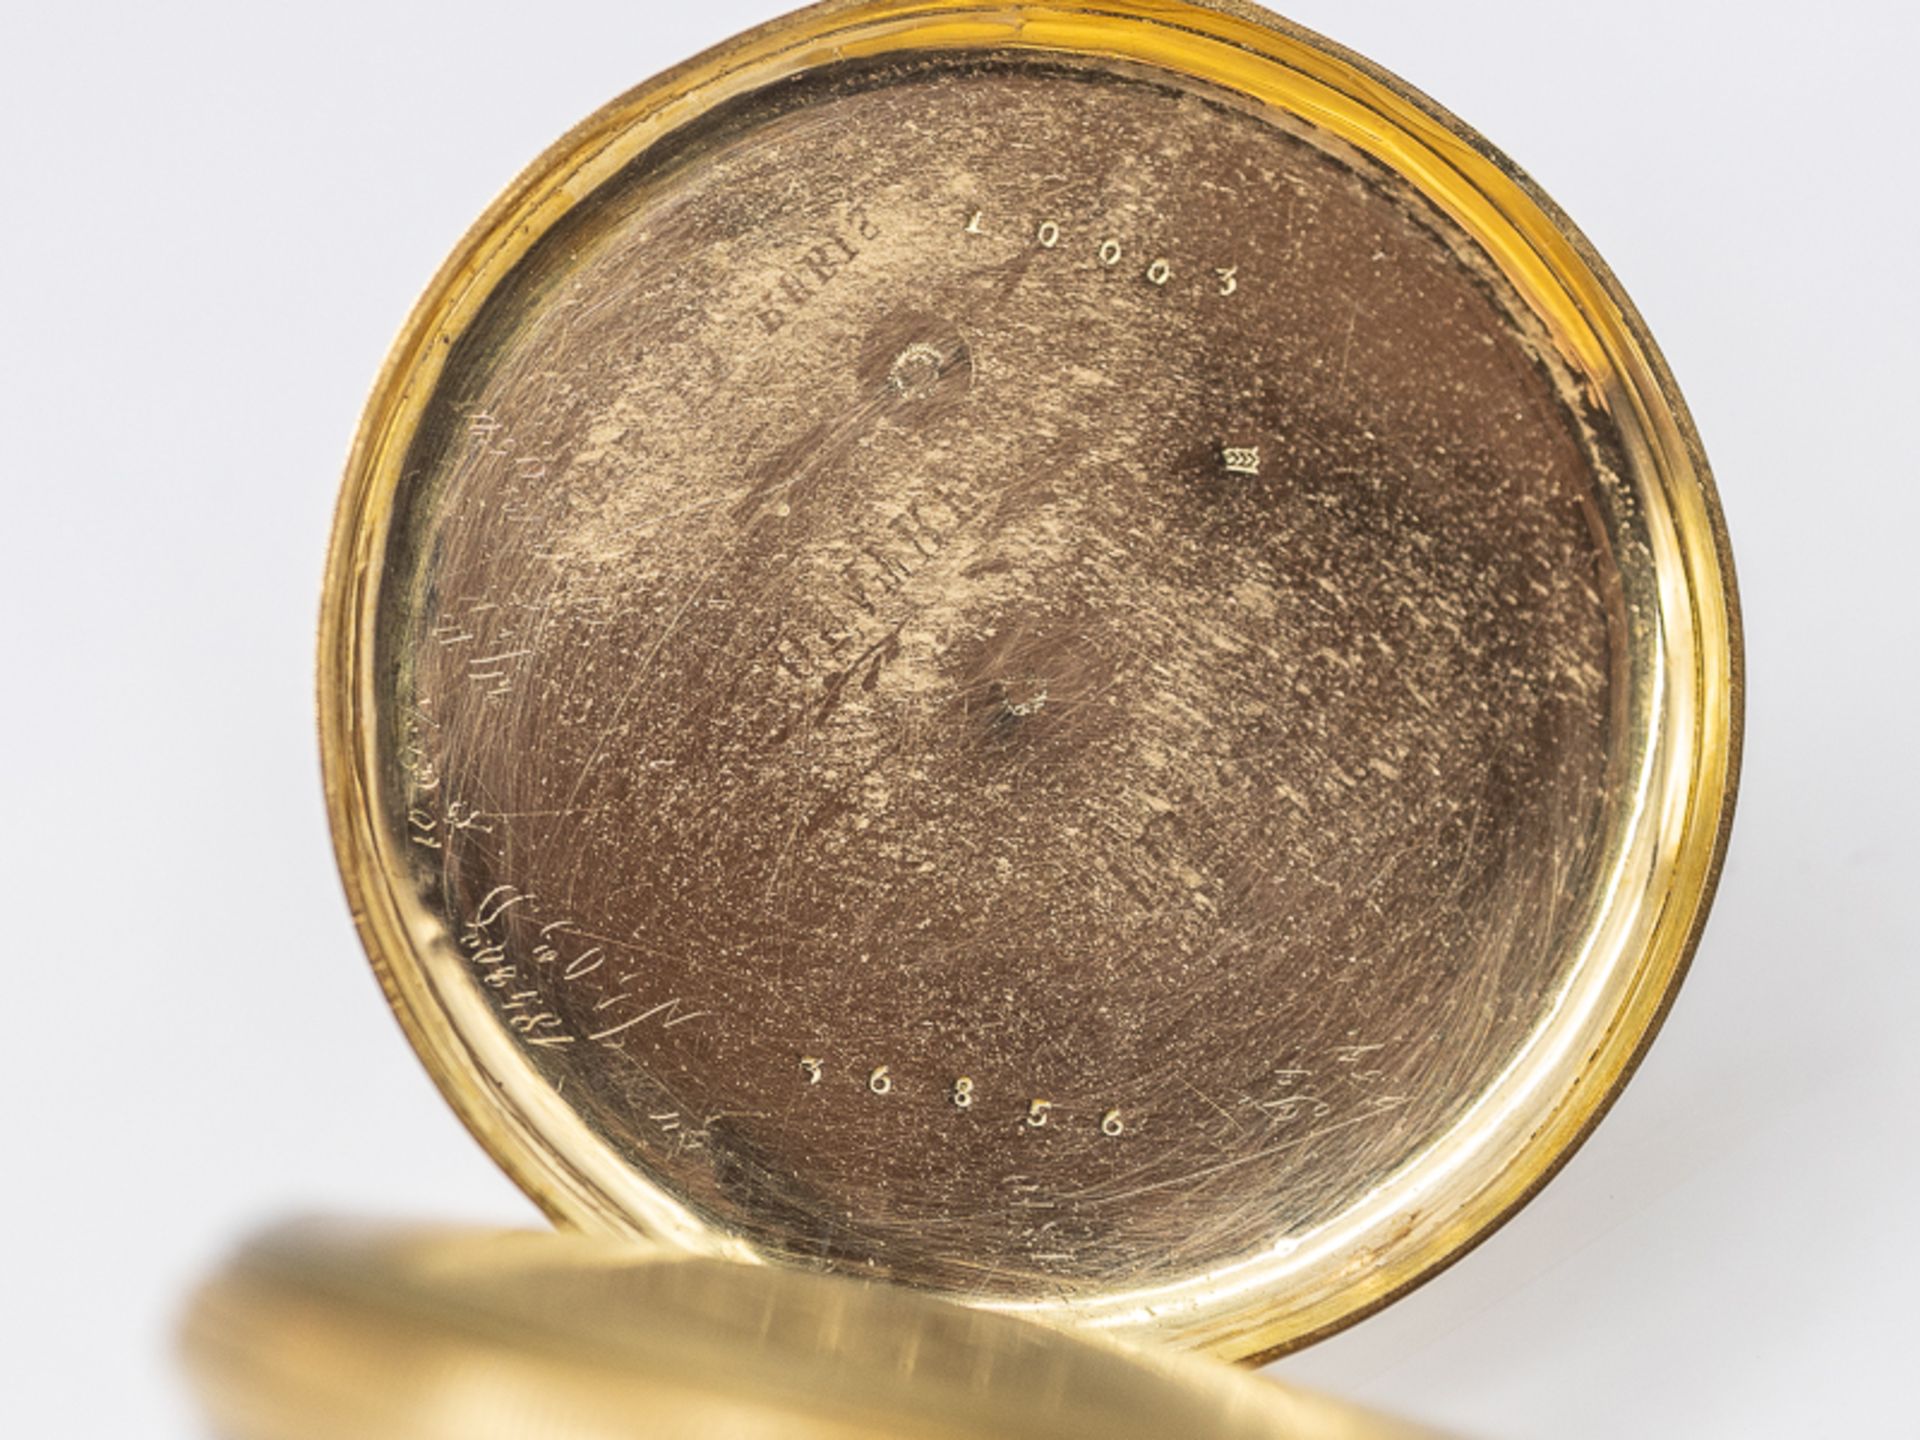 Taschenuhr, sogenannte Schlüsseluhr, 1. Hälfte 19. Jh. Gold und Metall. Gesamtgewicht ca. 49 g. - Bild 4 aus 5